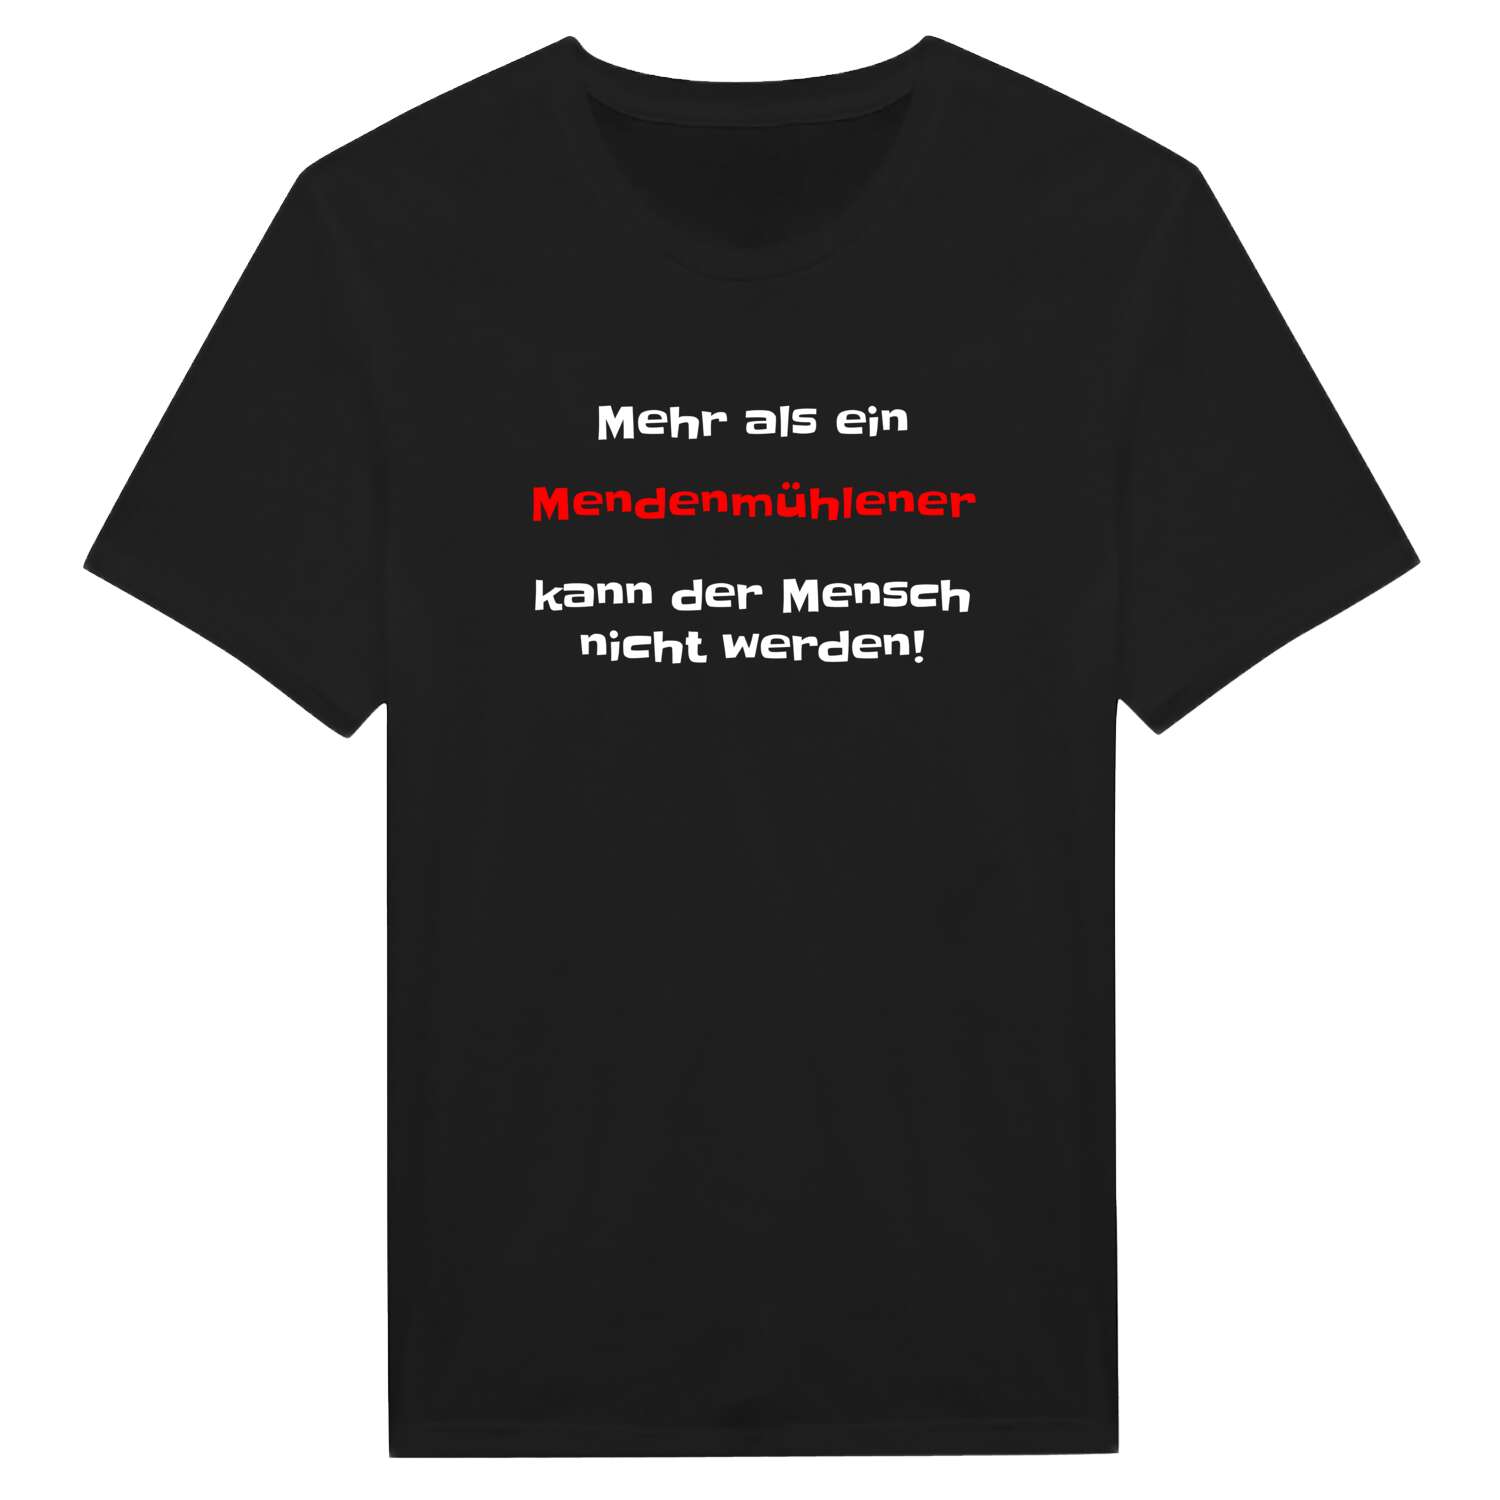 Mendenmühle T-Shirt »Mehr als ein«